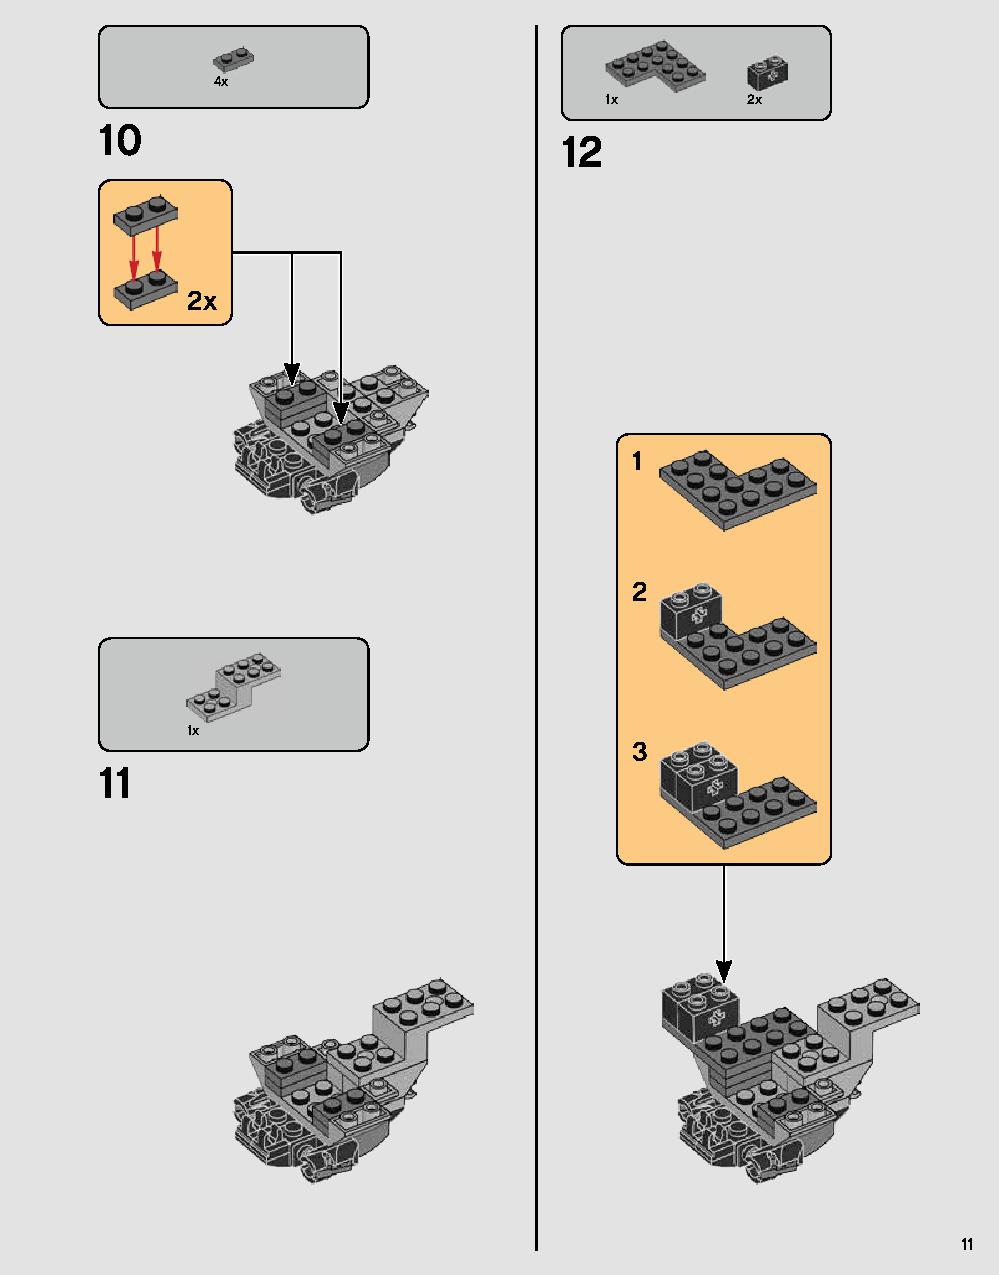 ダース・ベイダーの城 75251 レゴの商品情報 レゴの説明書・組立方法 11 page